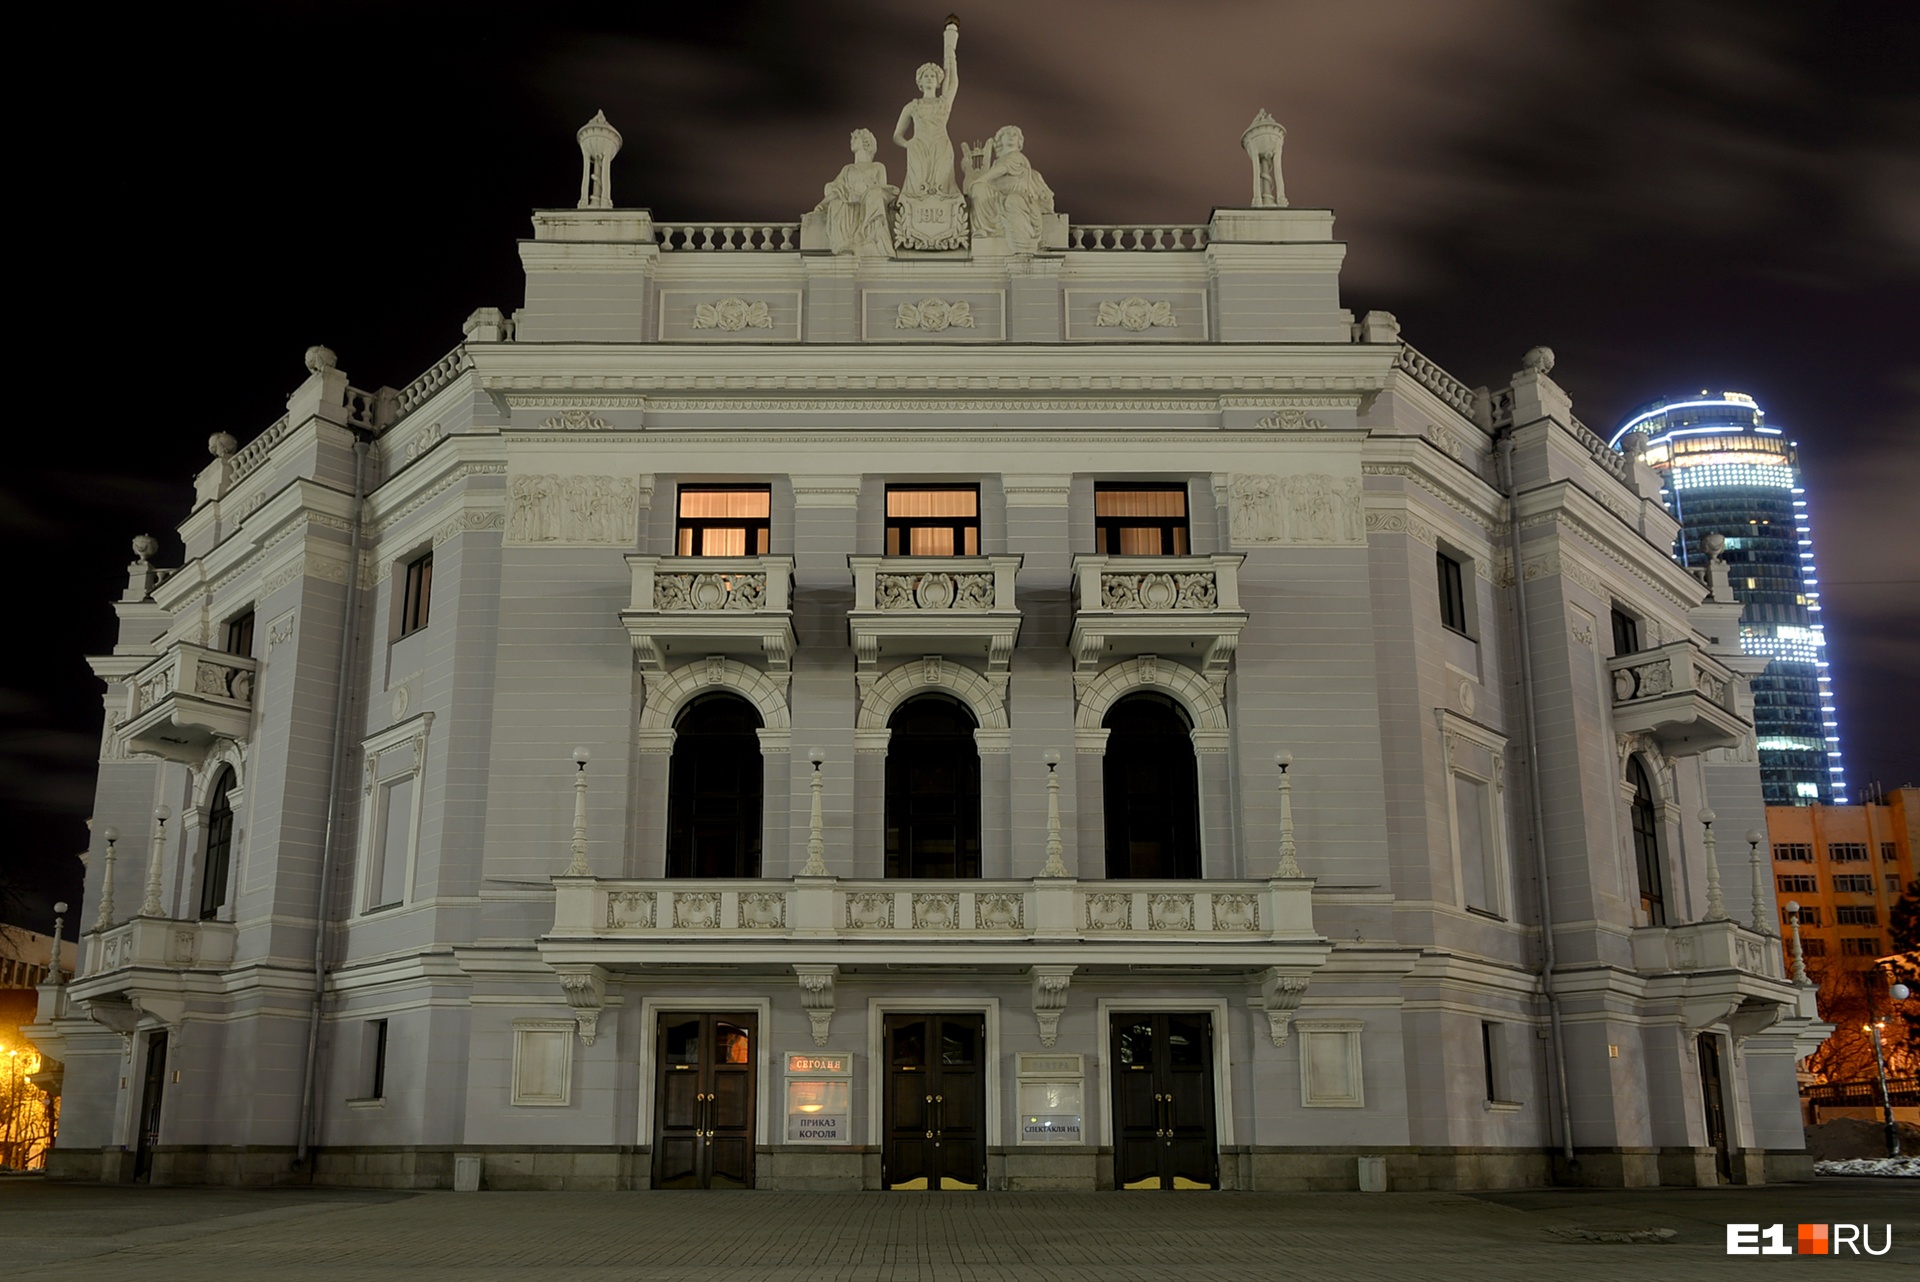 Оперный театр отреставрируют к 300-летию Екатеринбурга